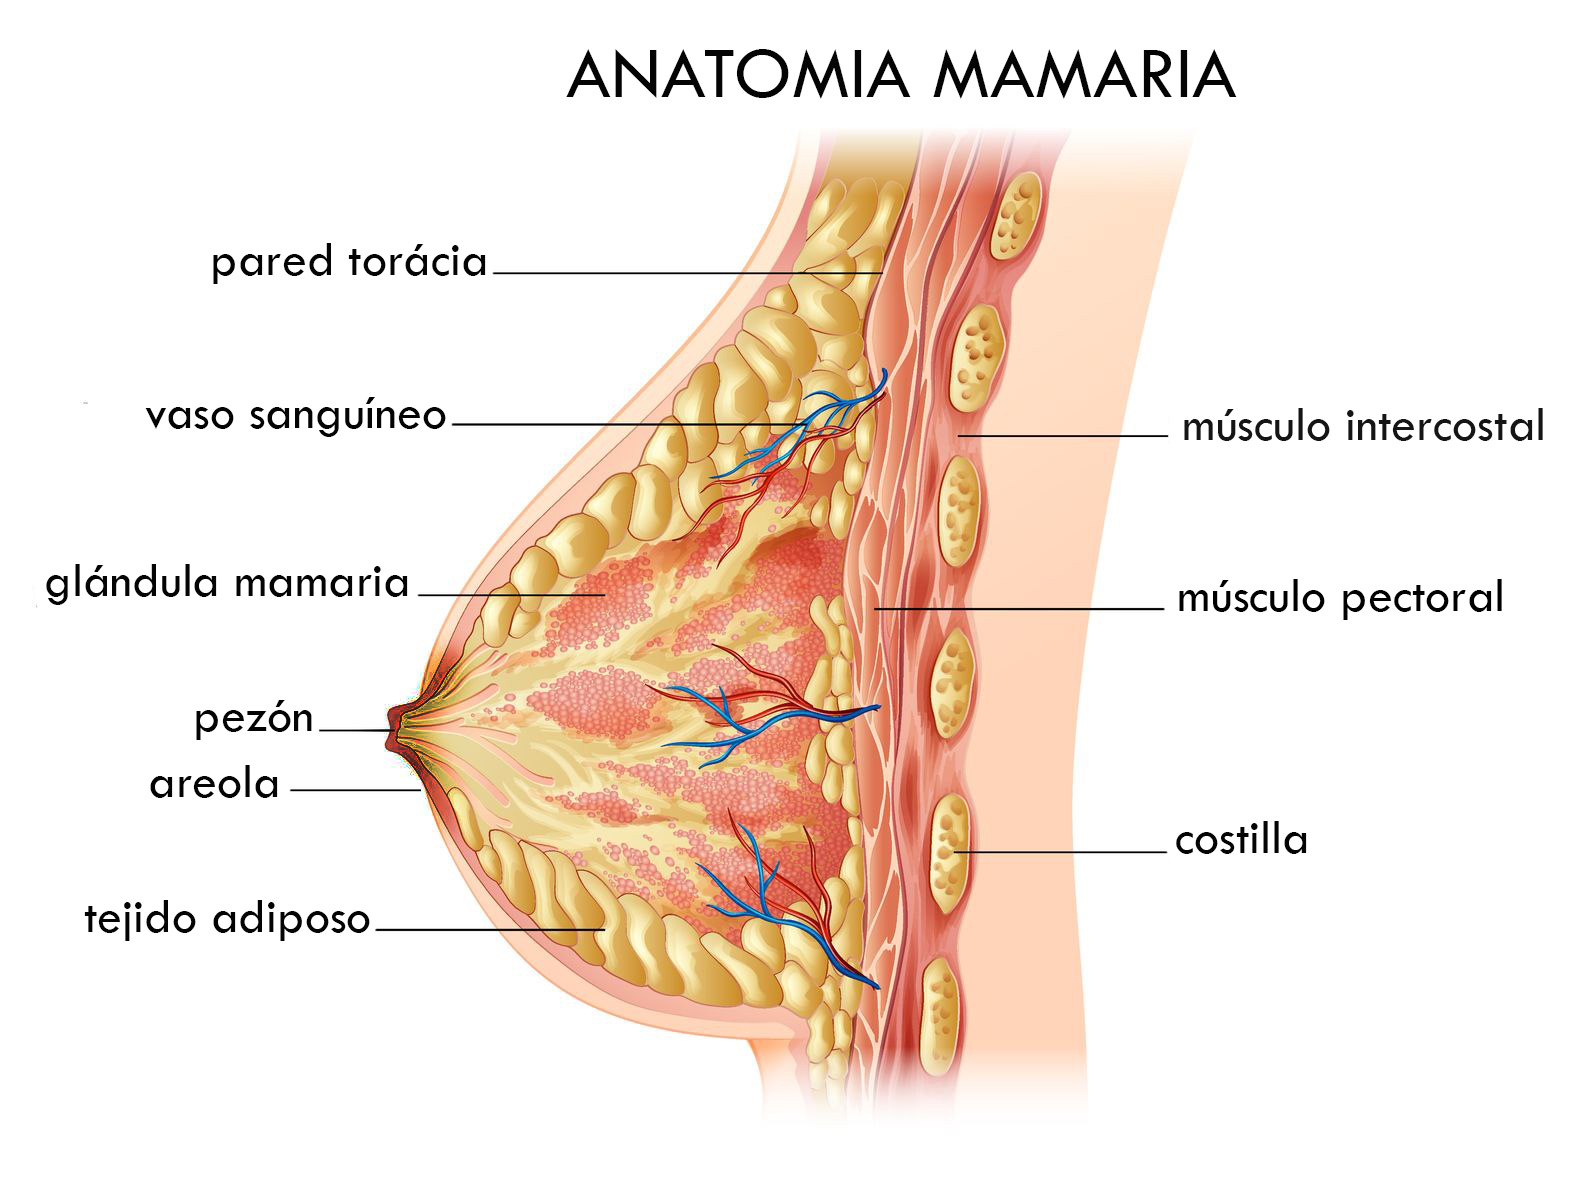 I.C.M: Instituto de Cirugía mamaria en Barcelona